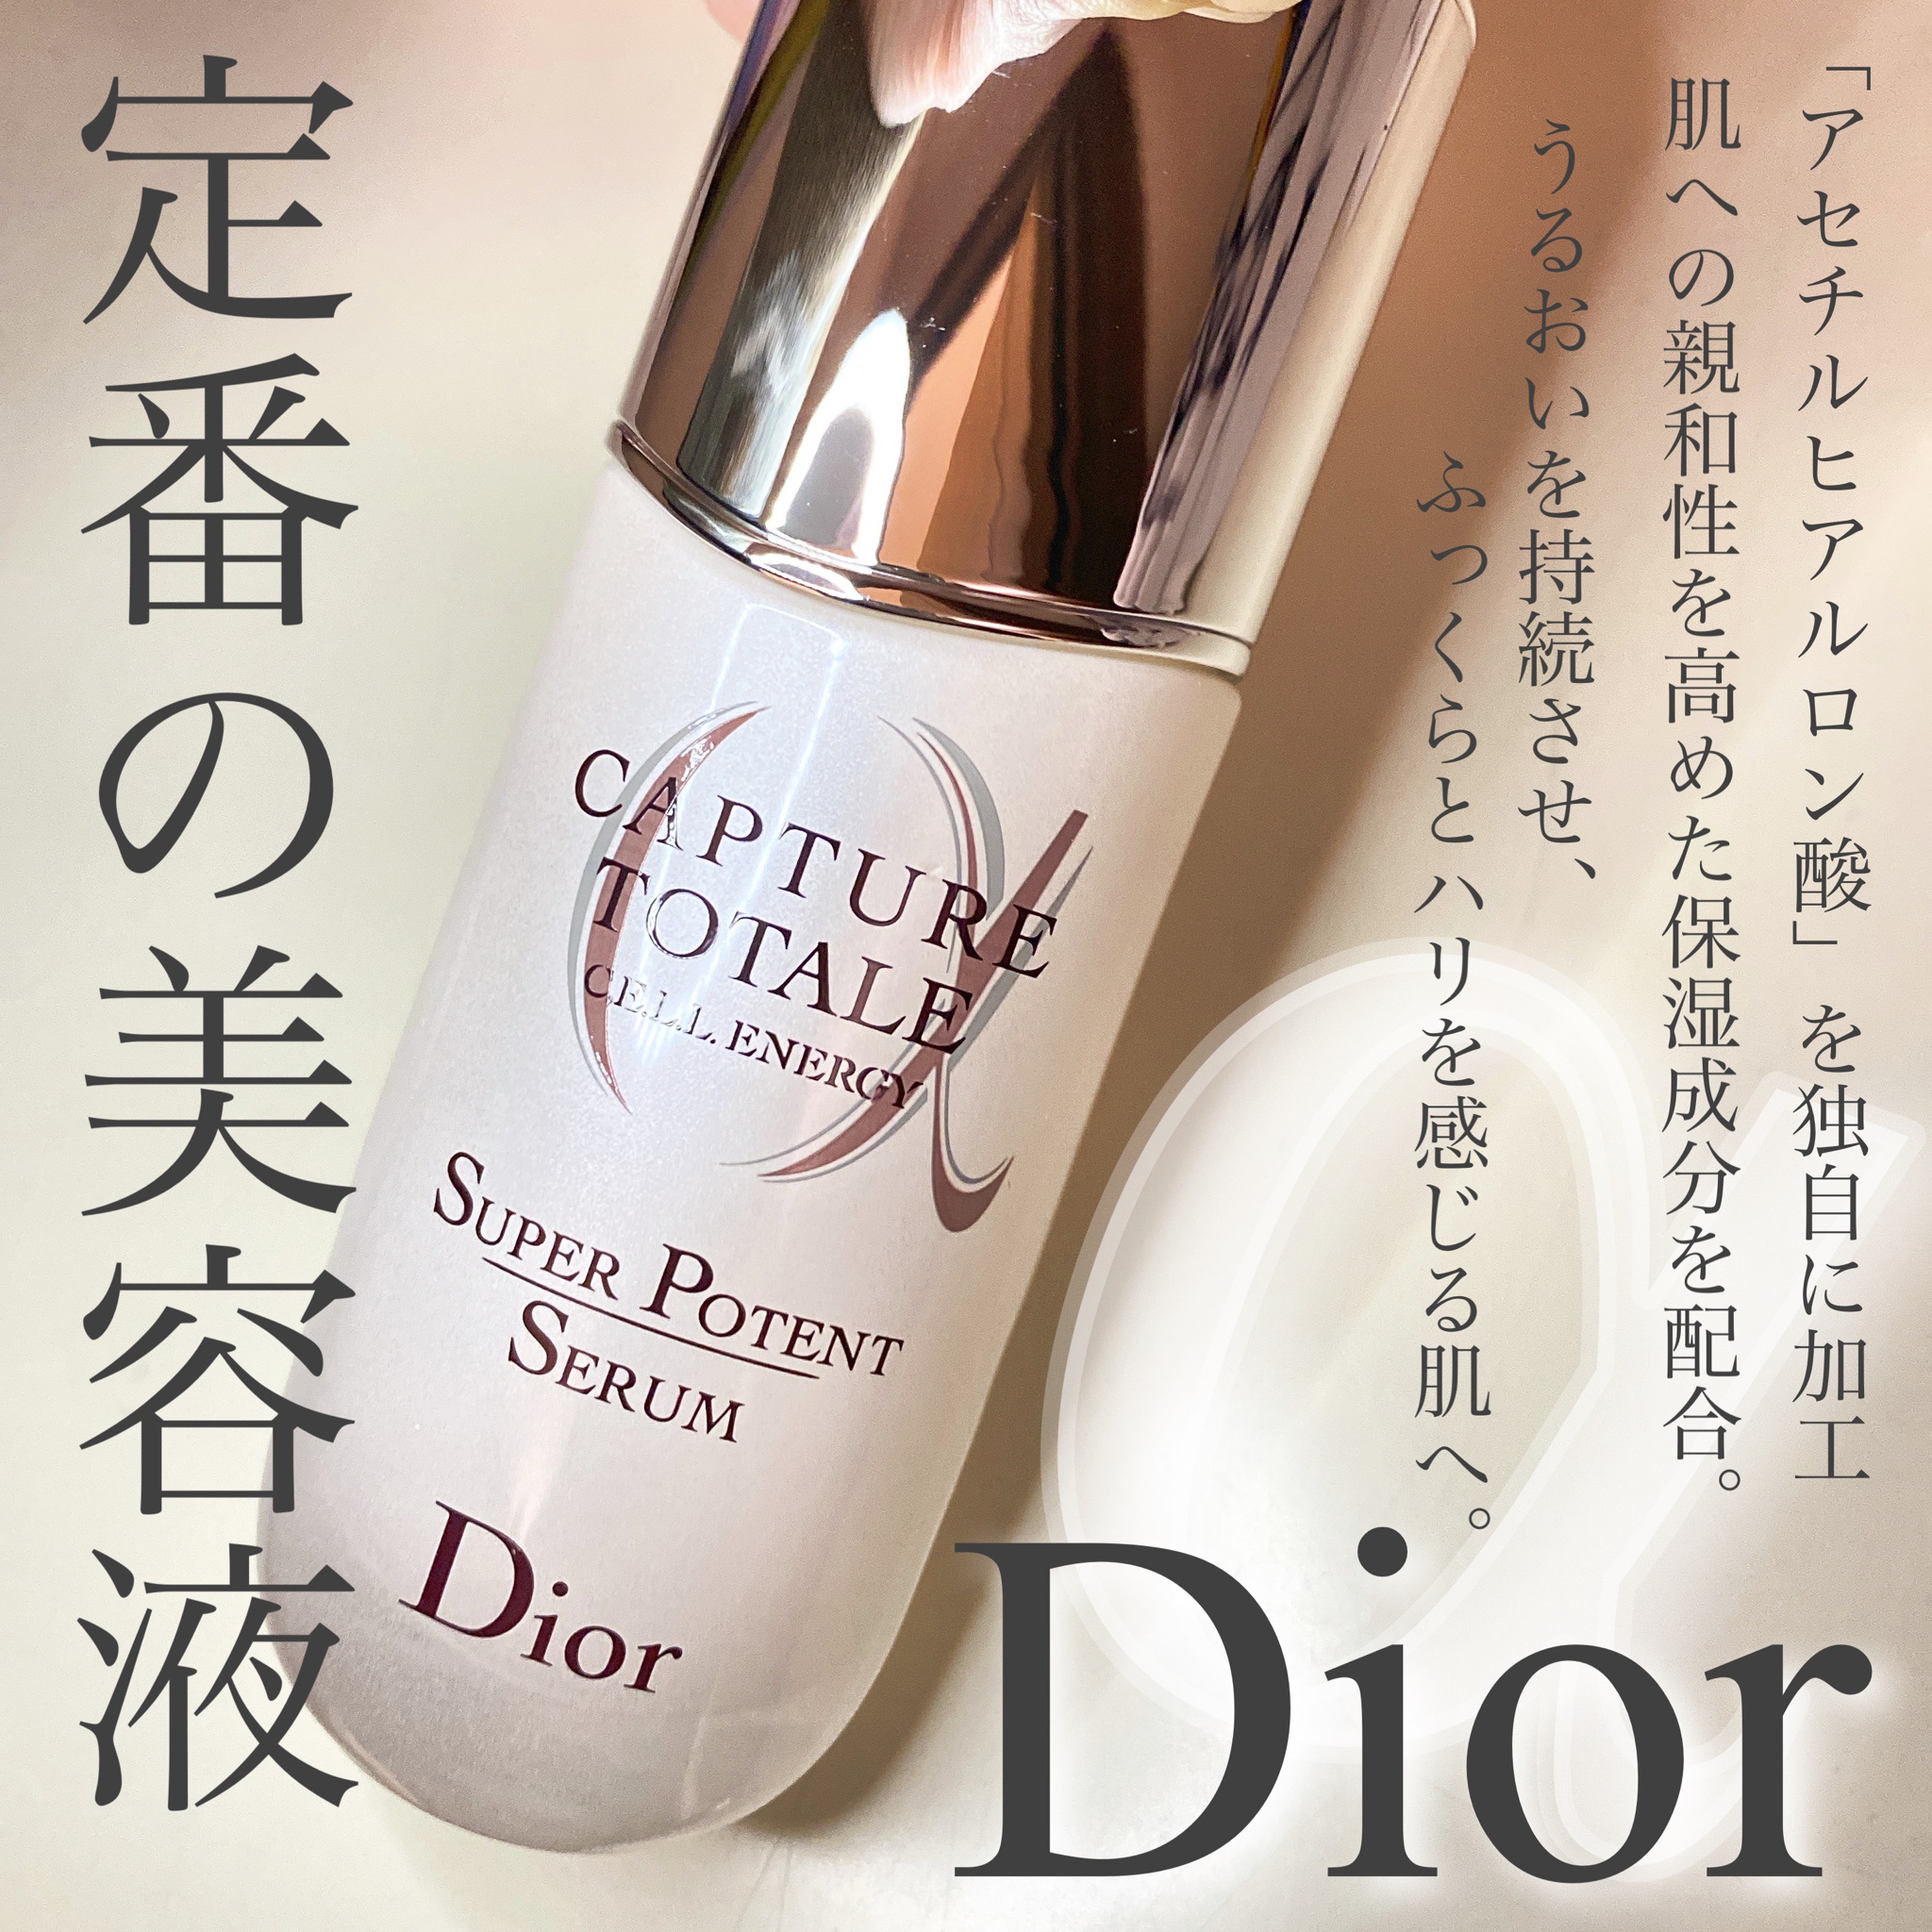 Dior カプチュール トータル セル ENGY スーパー セラム美容液